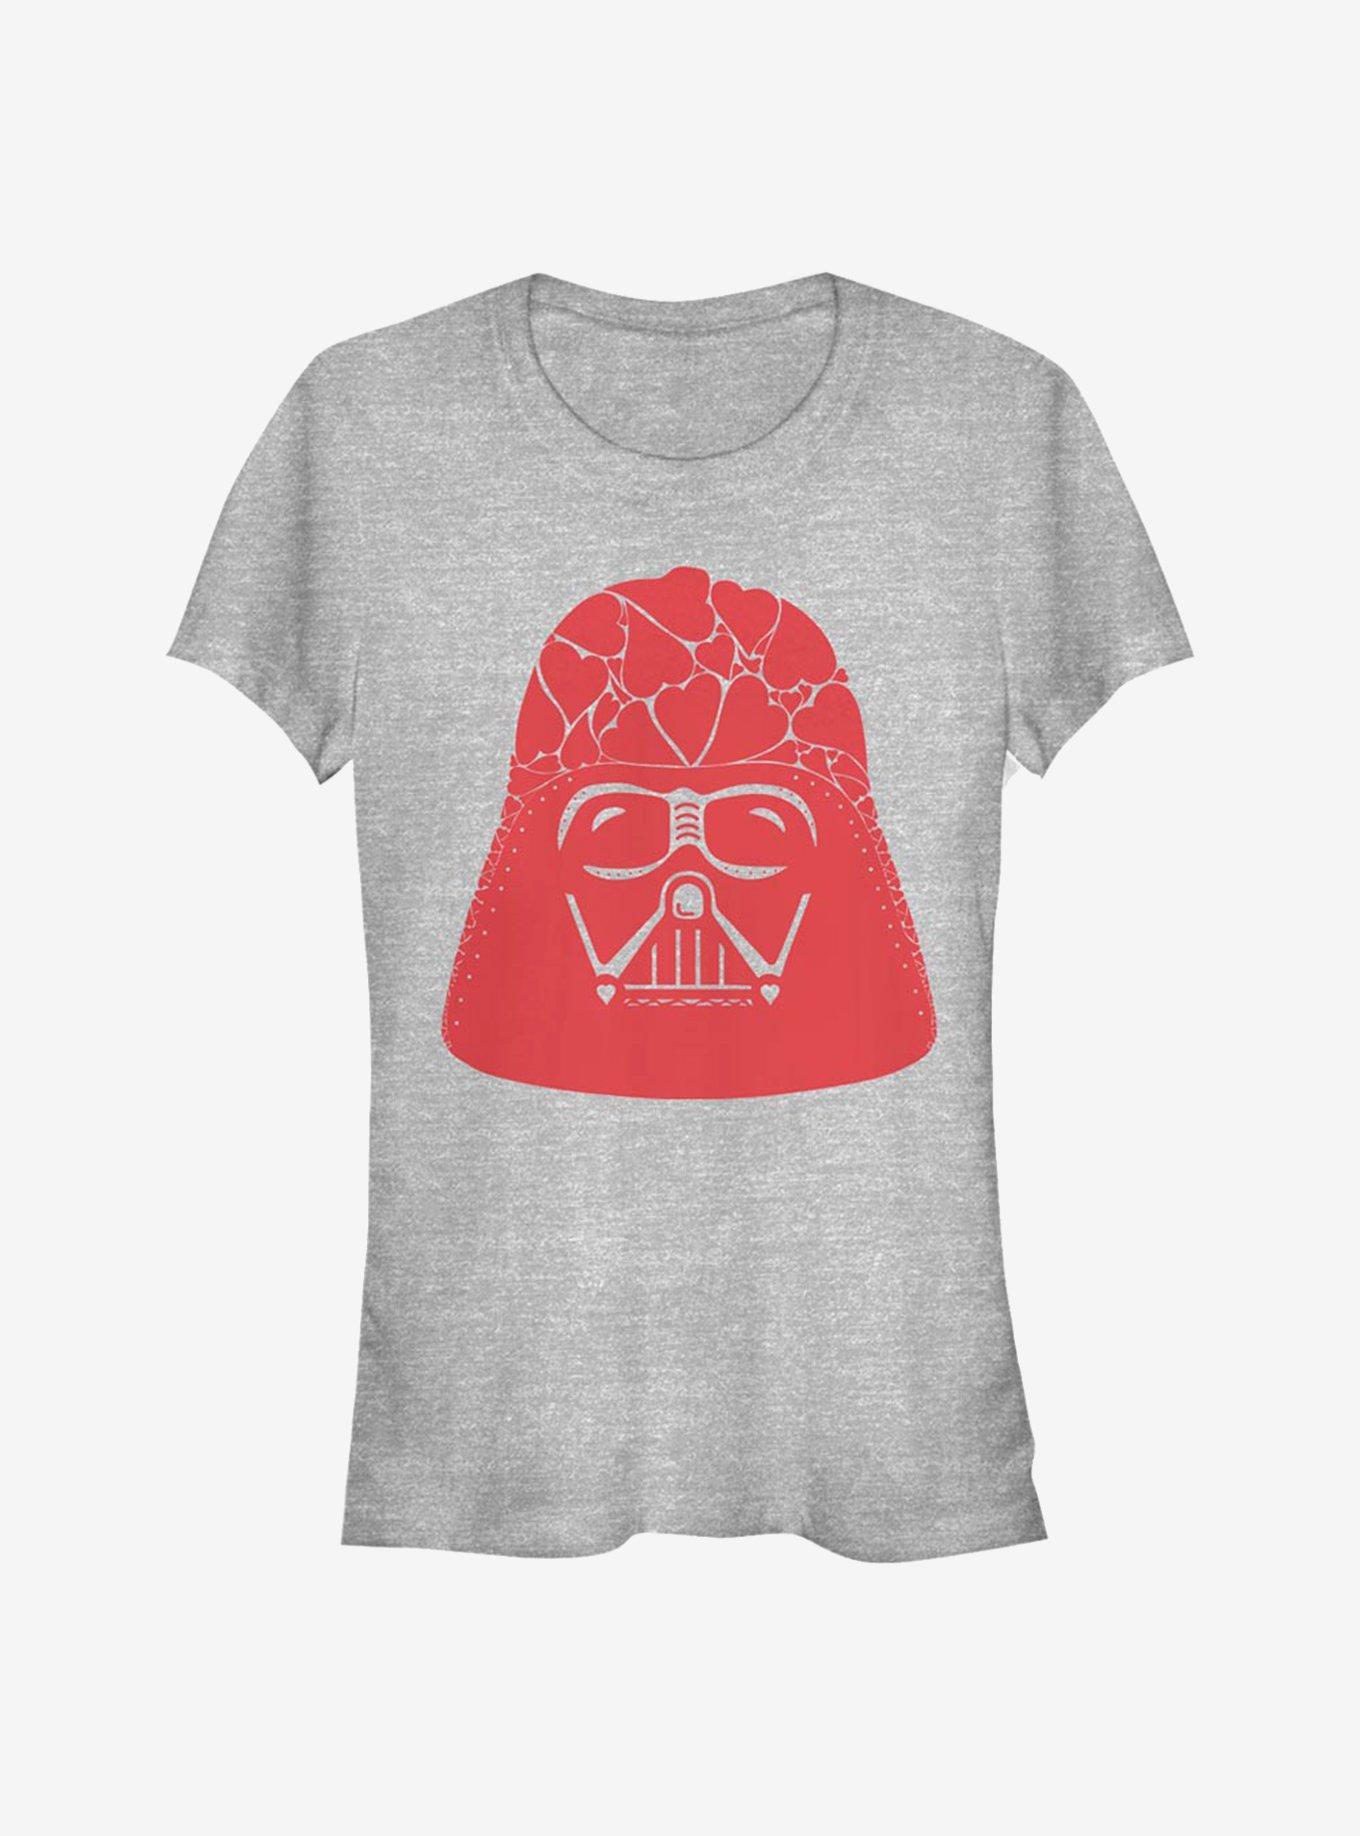 Star Wars Vader Heart Helmet Girls T-Shirt